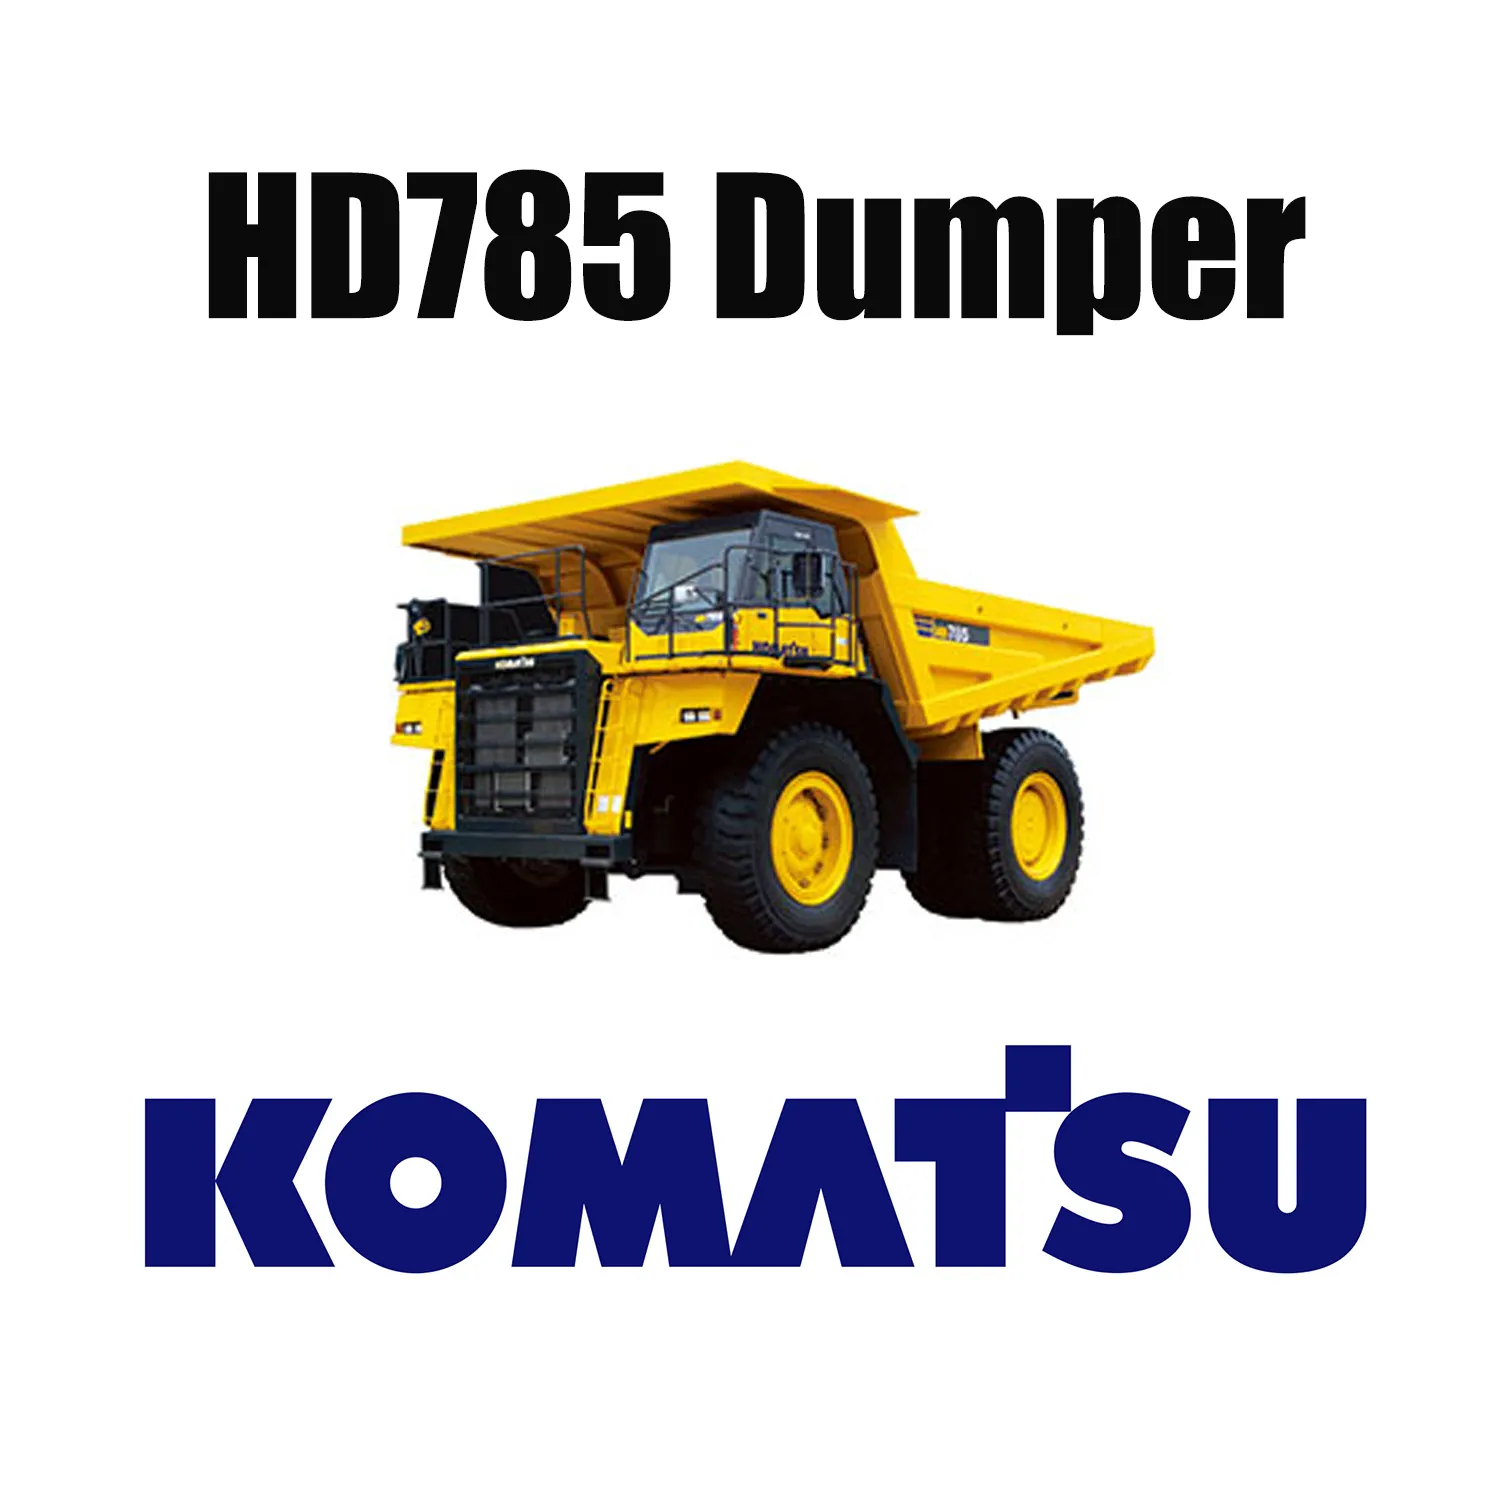 Wytrzymałe opony specjalistyczne OTR dla górnictwa 27.00R49 do wywrotki KOMATSU HD785